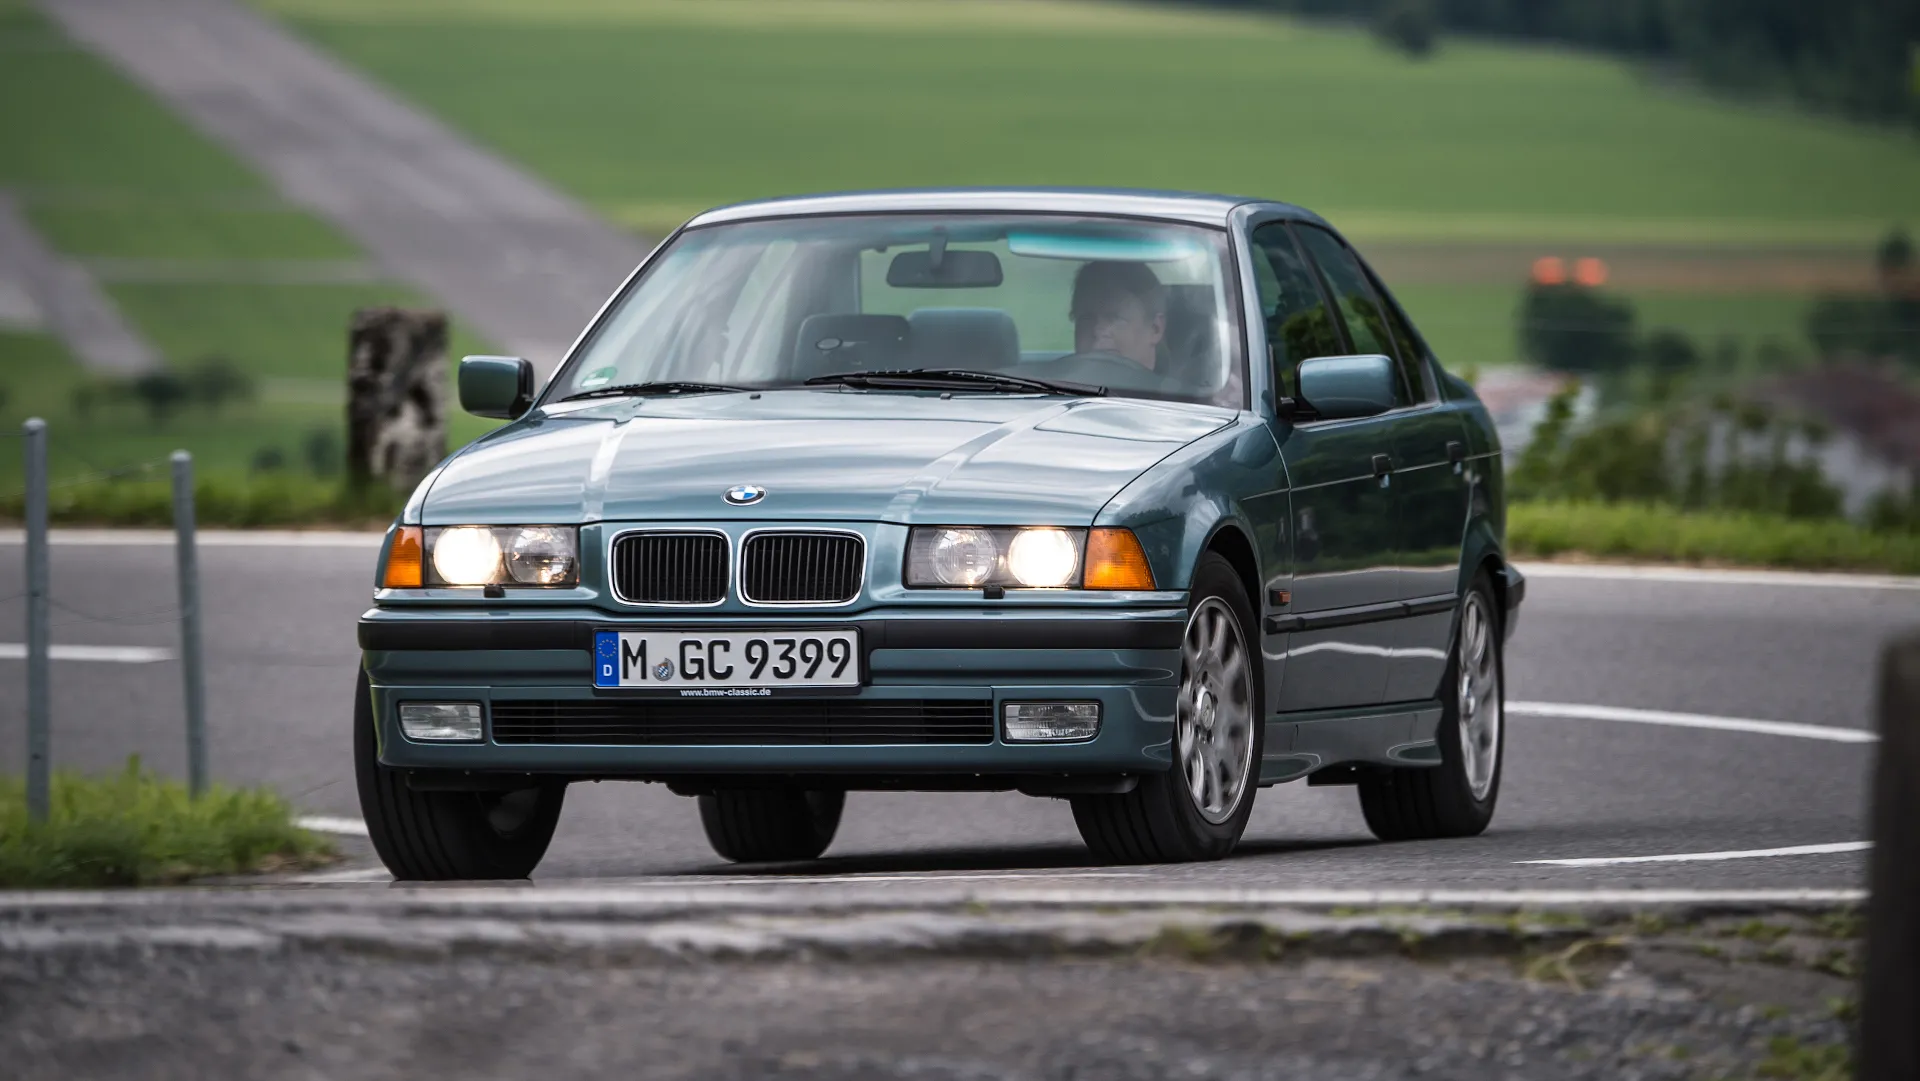 Coche del día: BMW Serie 3 (E36)